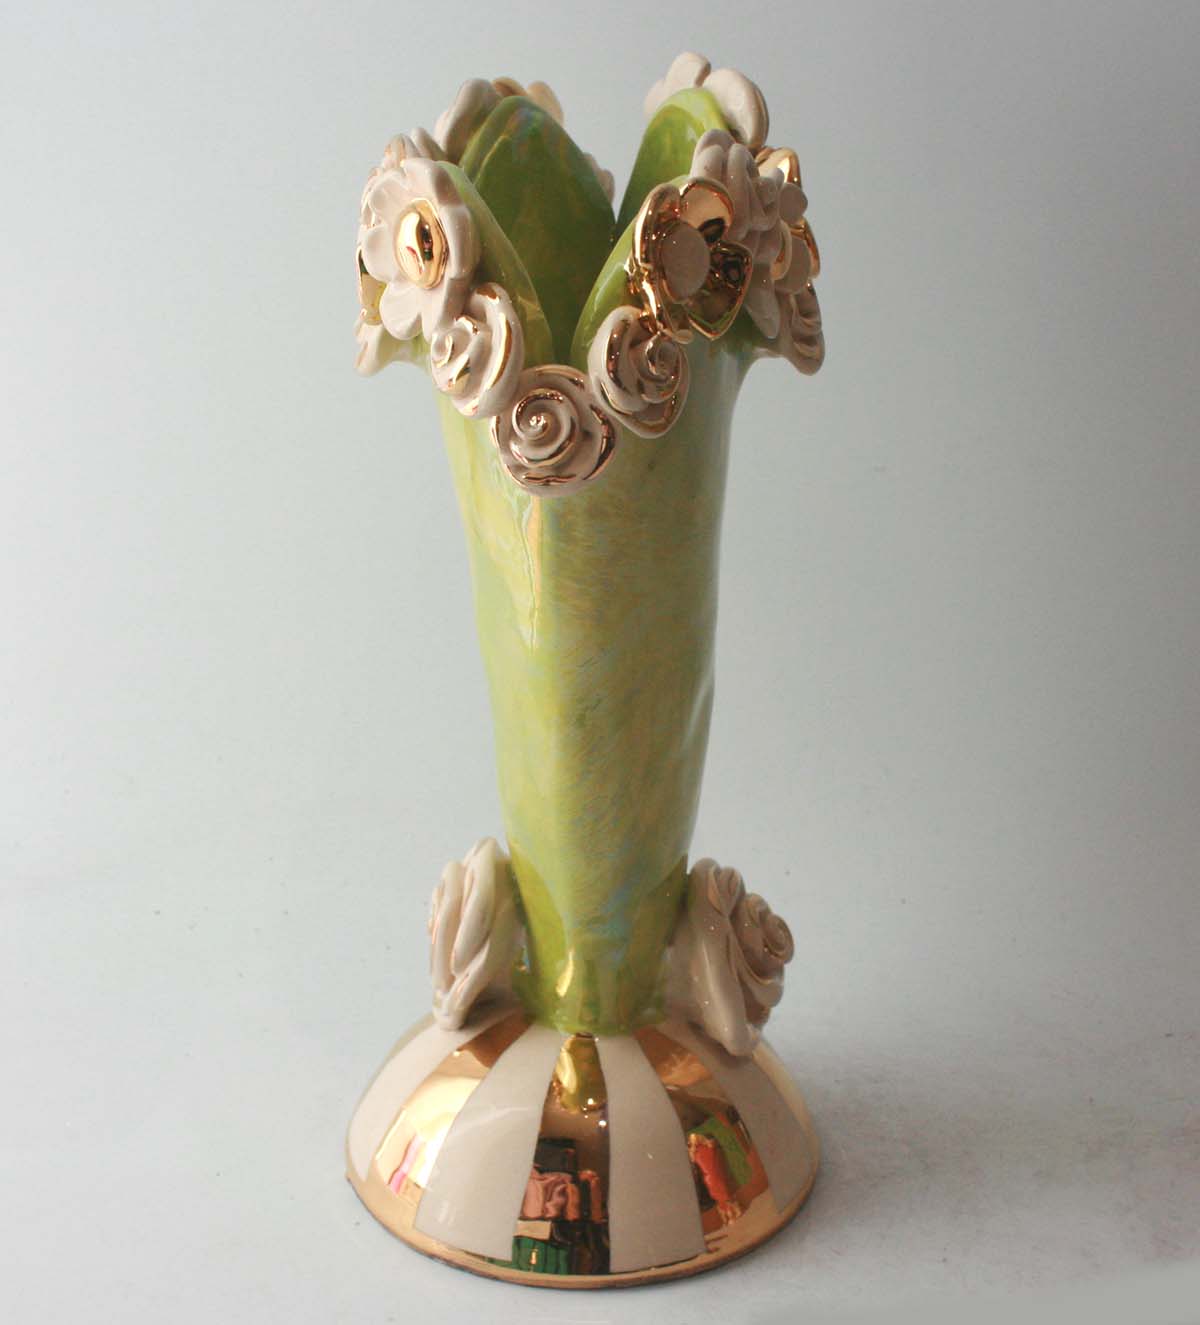 Medium Multiflower Encrusted Heart Vase in Iridescent Green